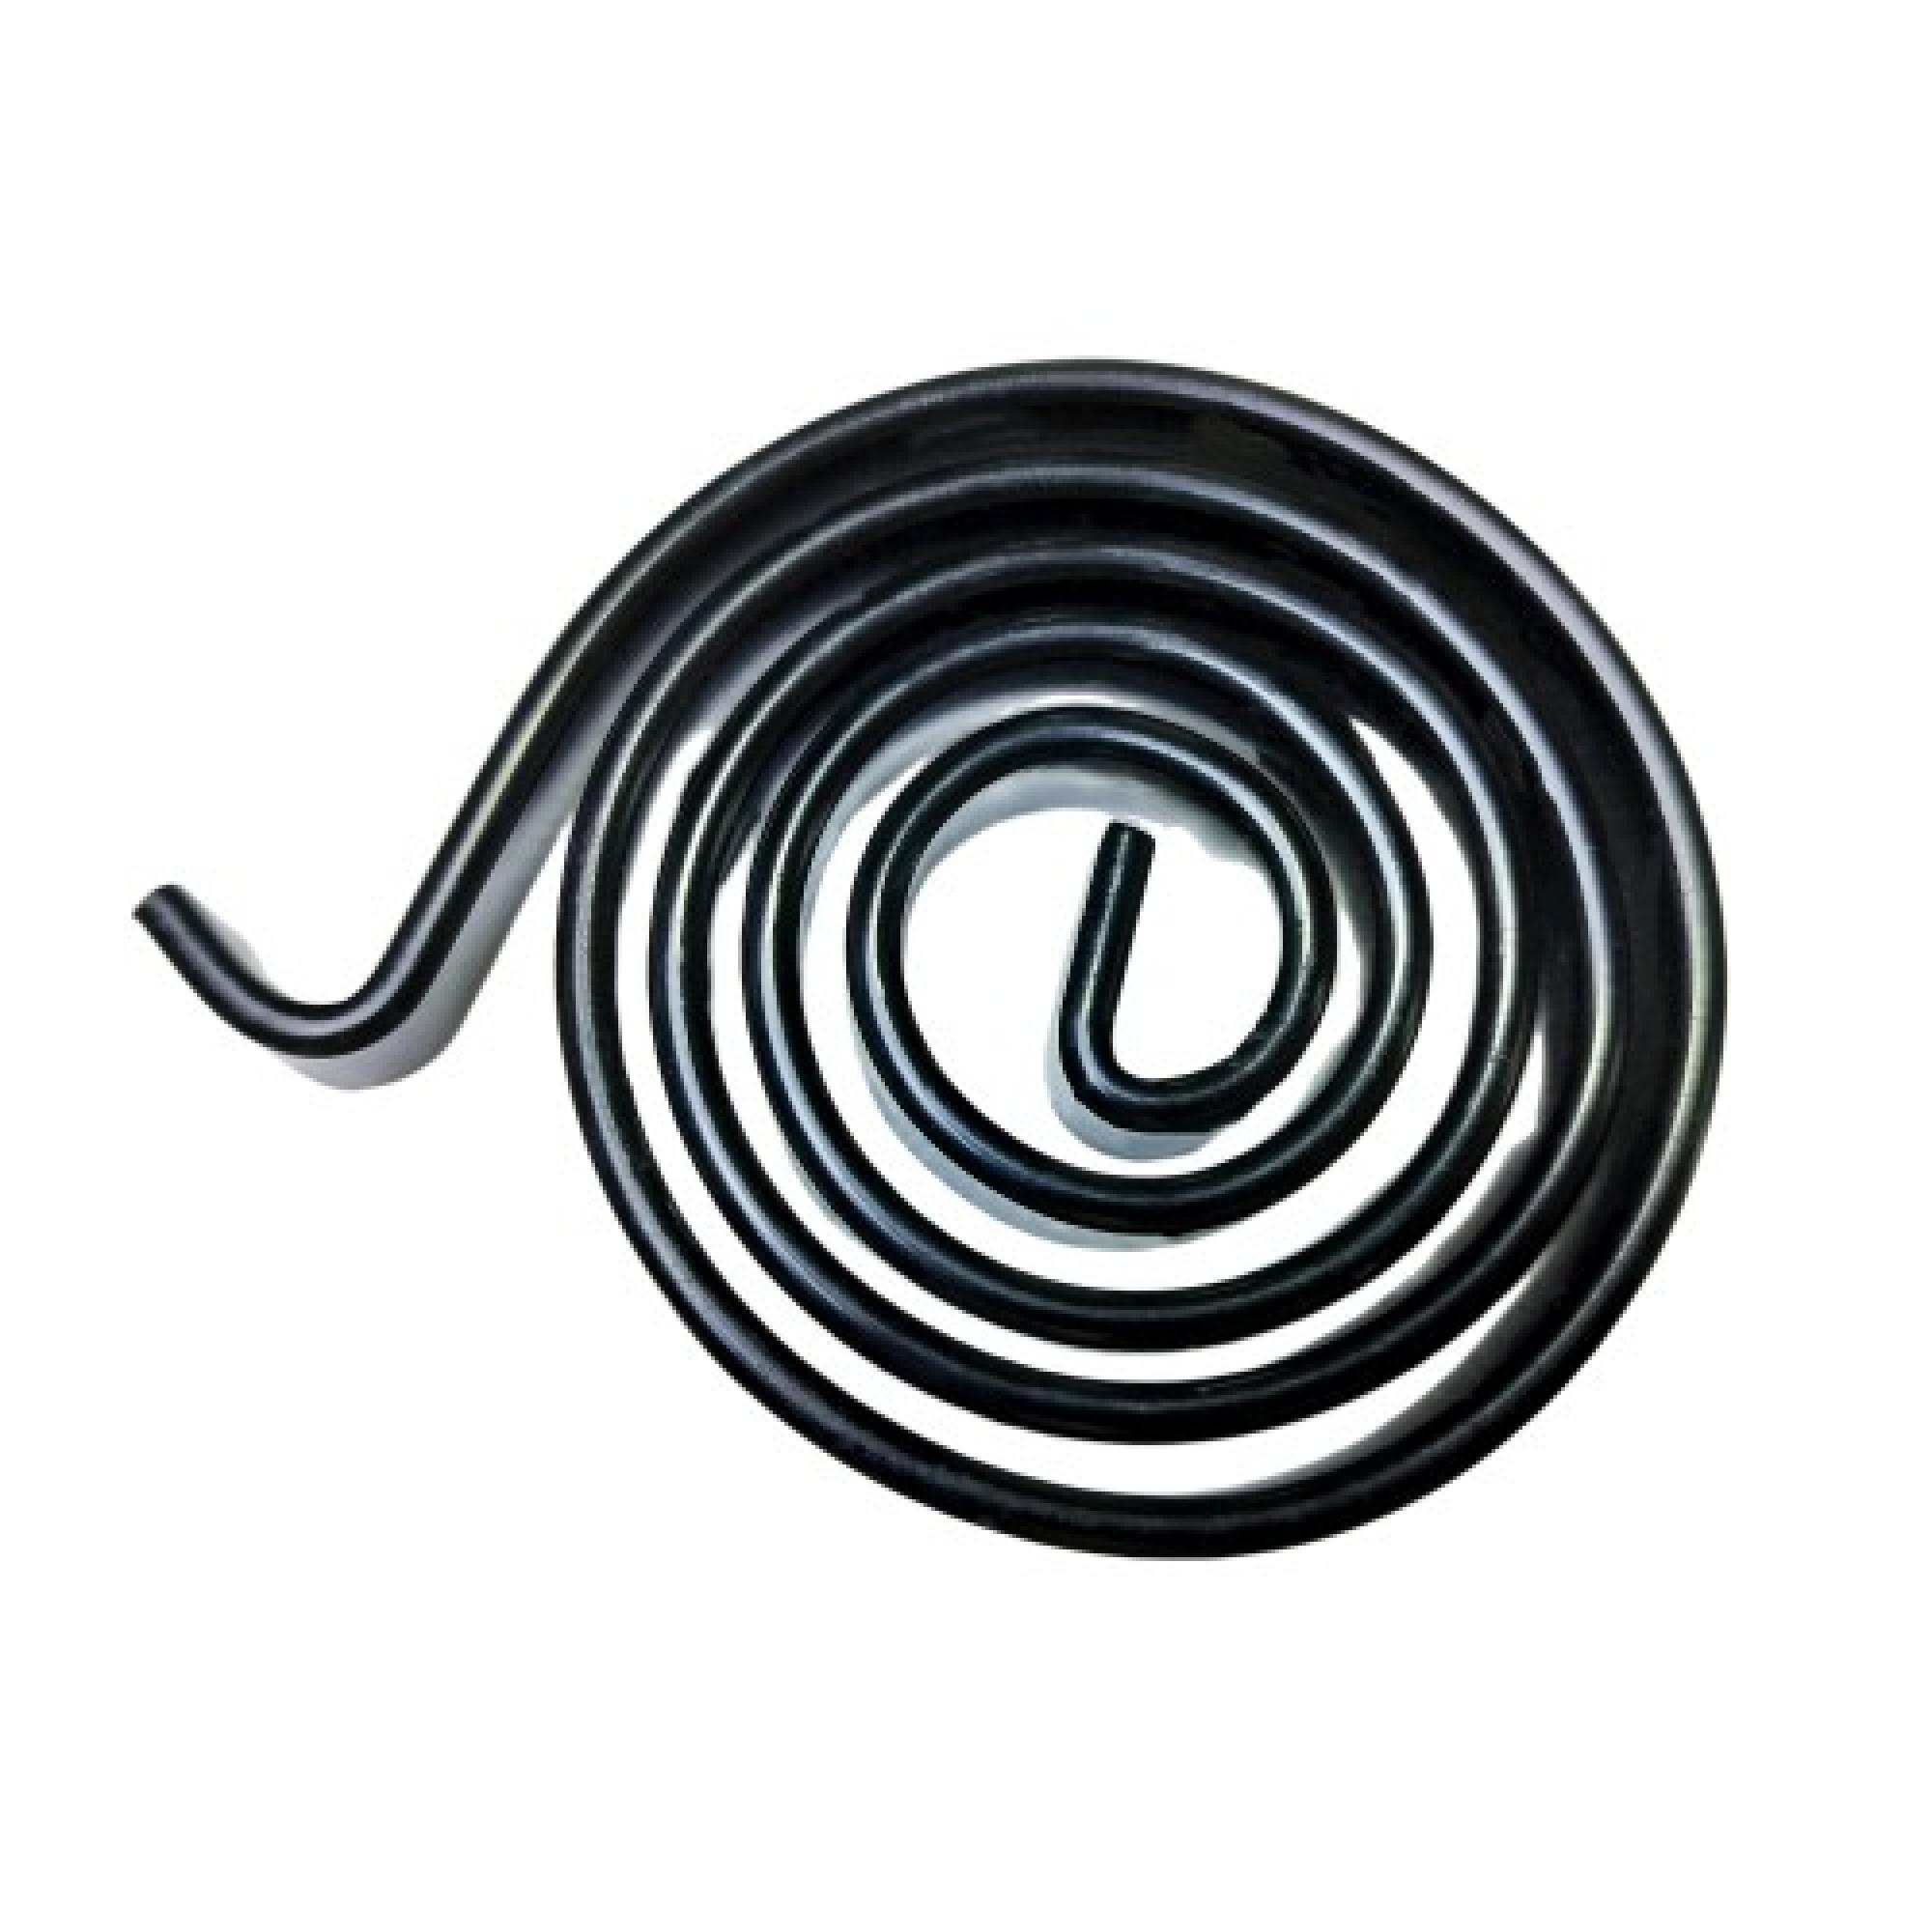 China Flat Spiral Springs Manufacturer